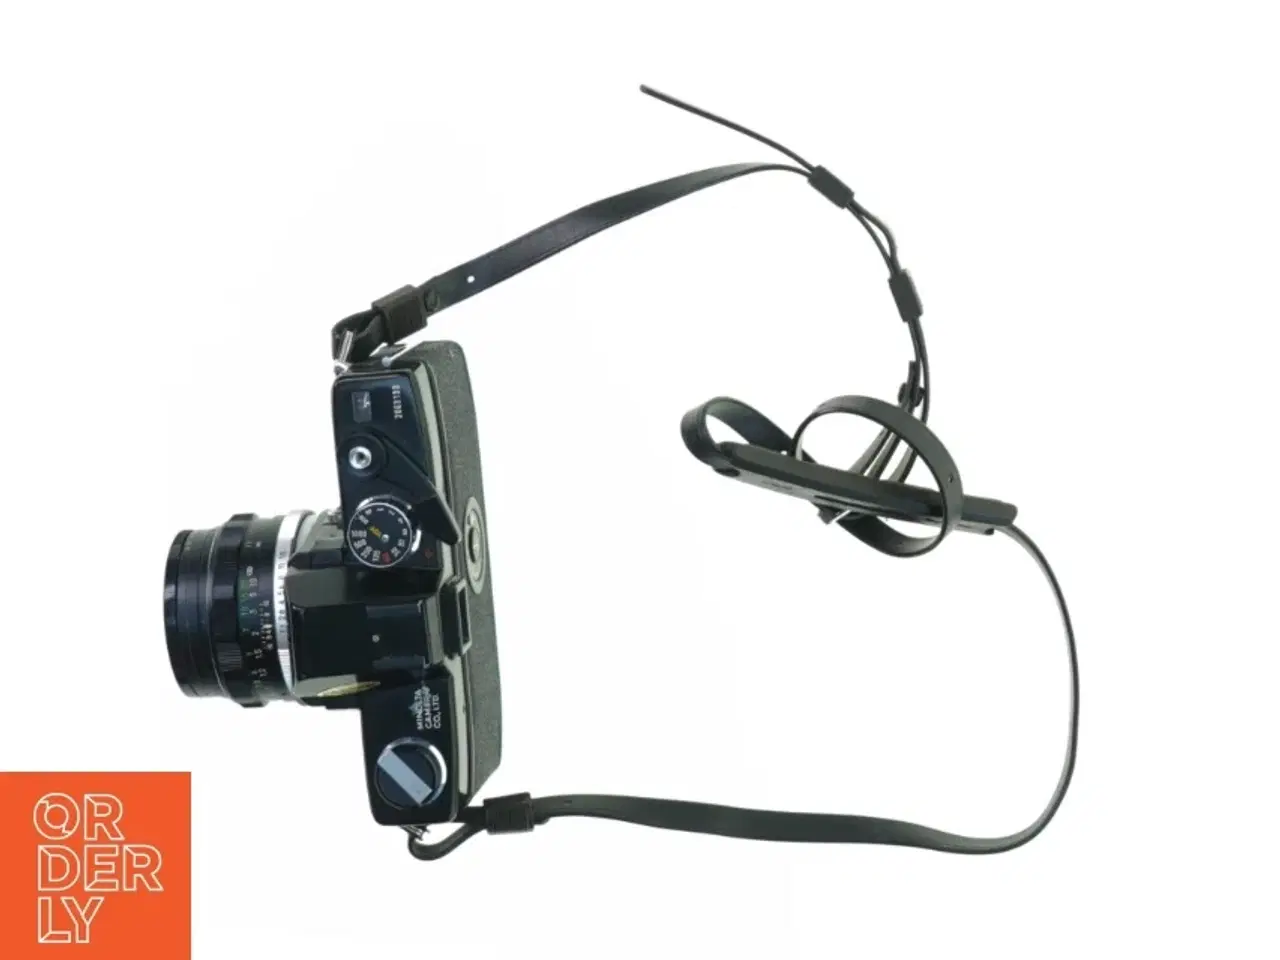 Billede 1 - Kamera fra Sigma (str. 14 x 9 x 10 cm)